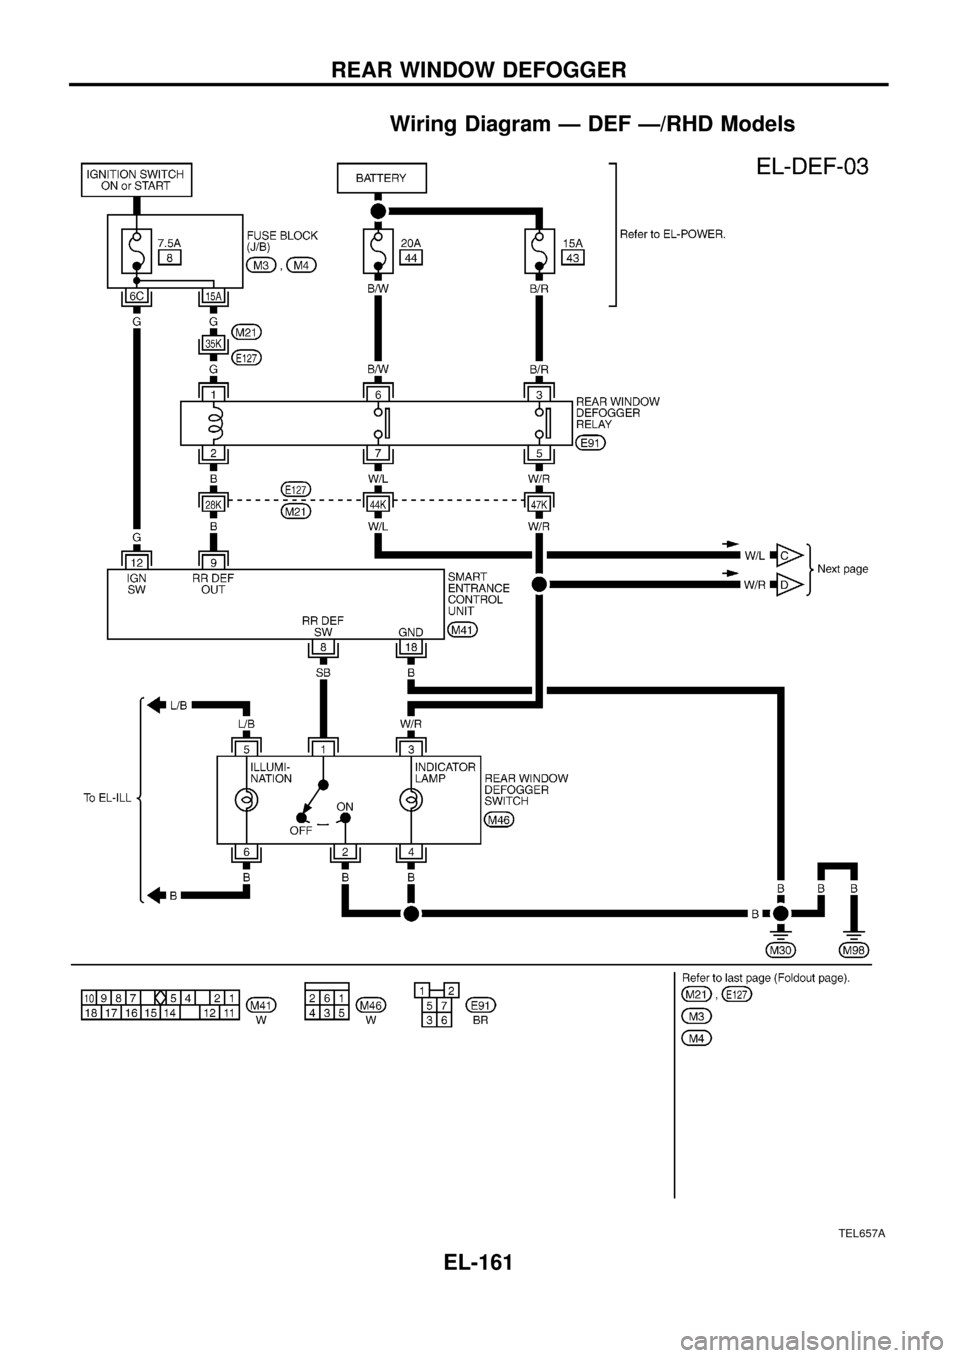 NISSAN PATROL 1998 Y61 / 5.G Electrical System Workshop Manual Wiring Diagram Ð DEF Ð/RHD Models
TEL657A
REAR WINDOW DEFOGGER
EL-161 